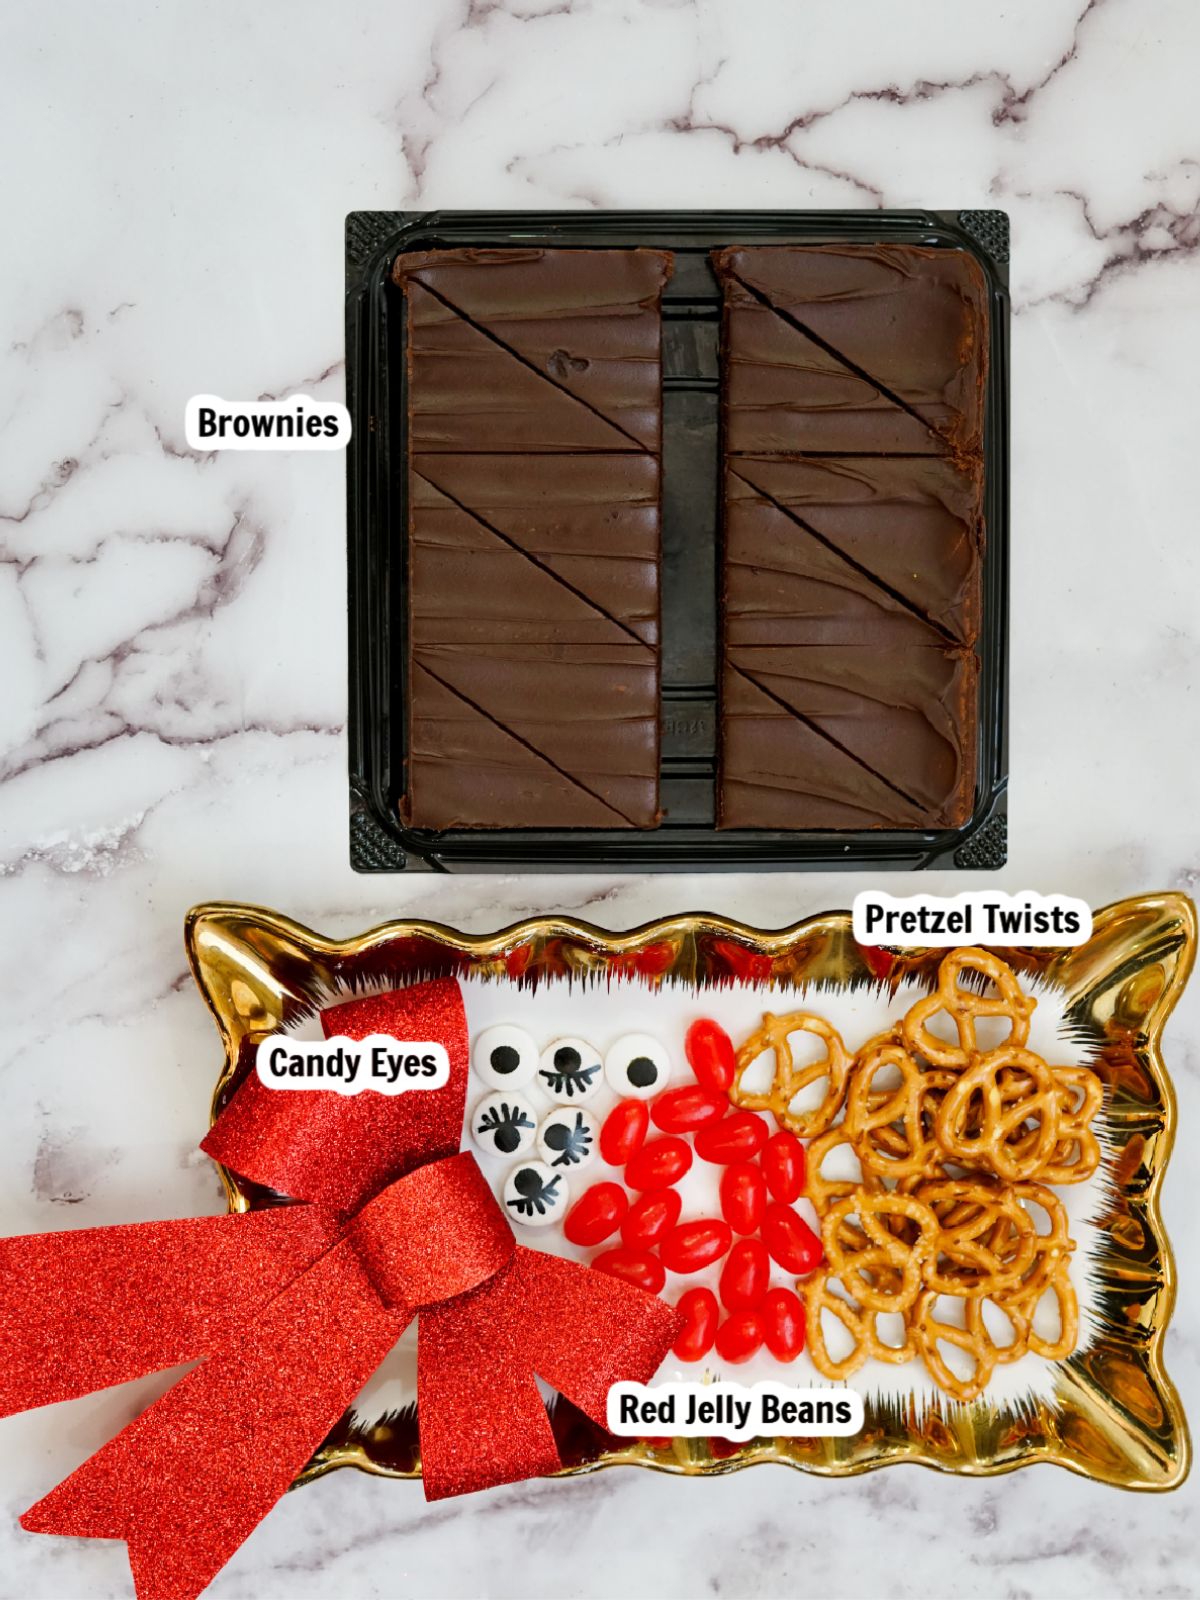 Ingredients for brownies.